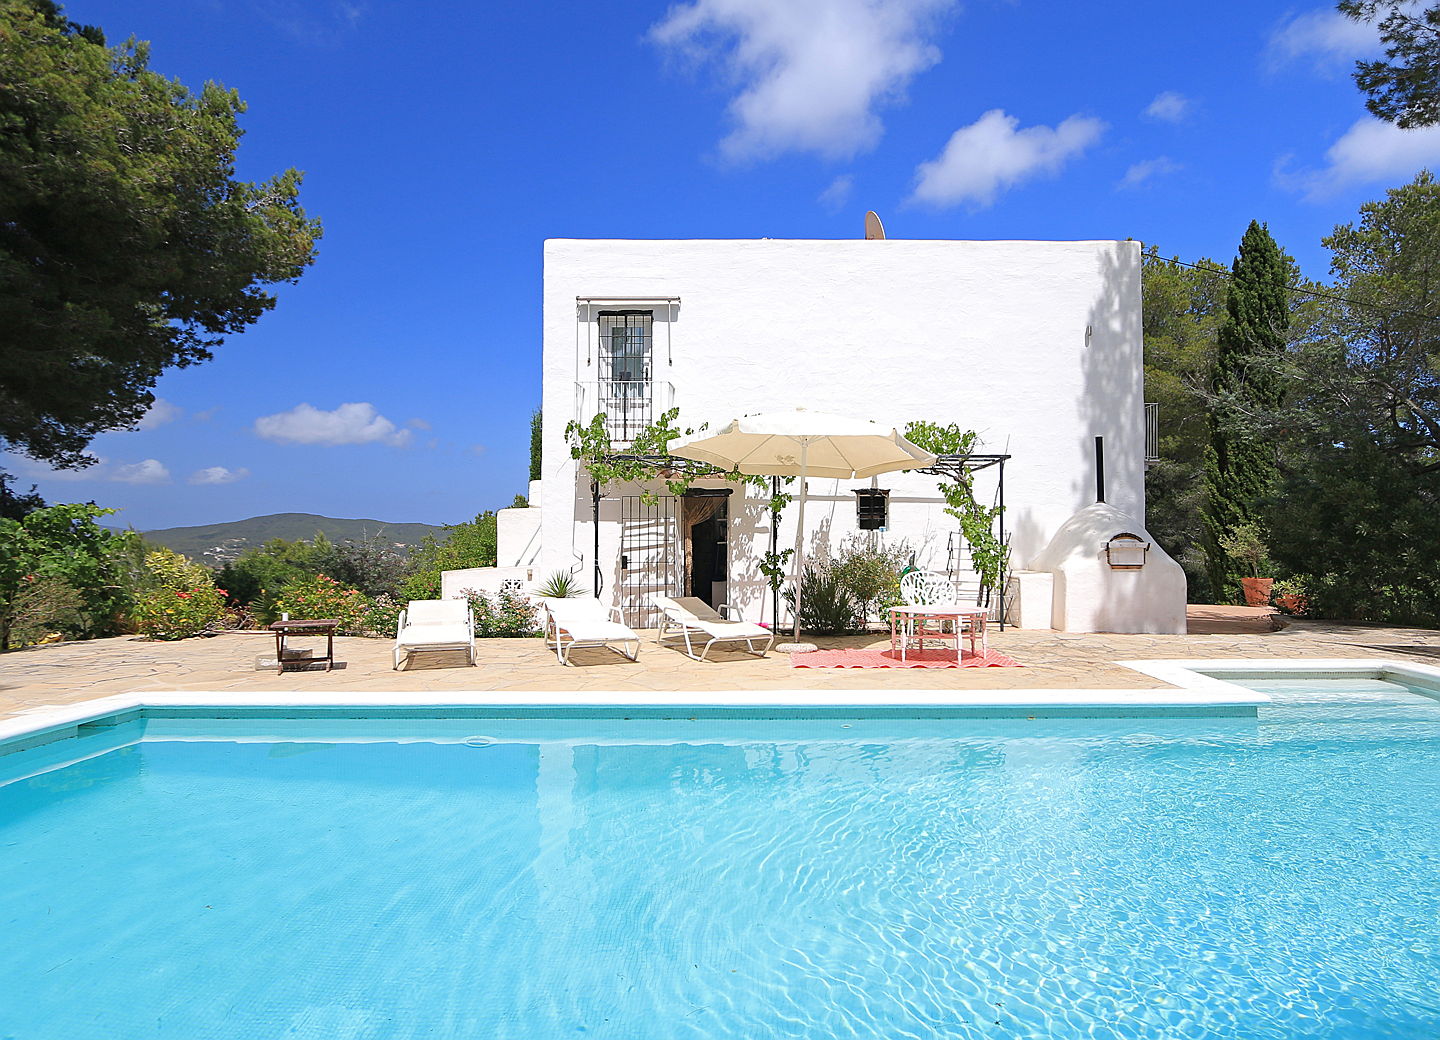  Ibiza
- Propiedad en venta con piscina grande (Santa Eulalia)